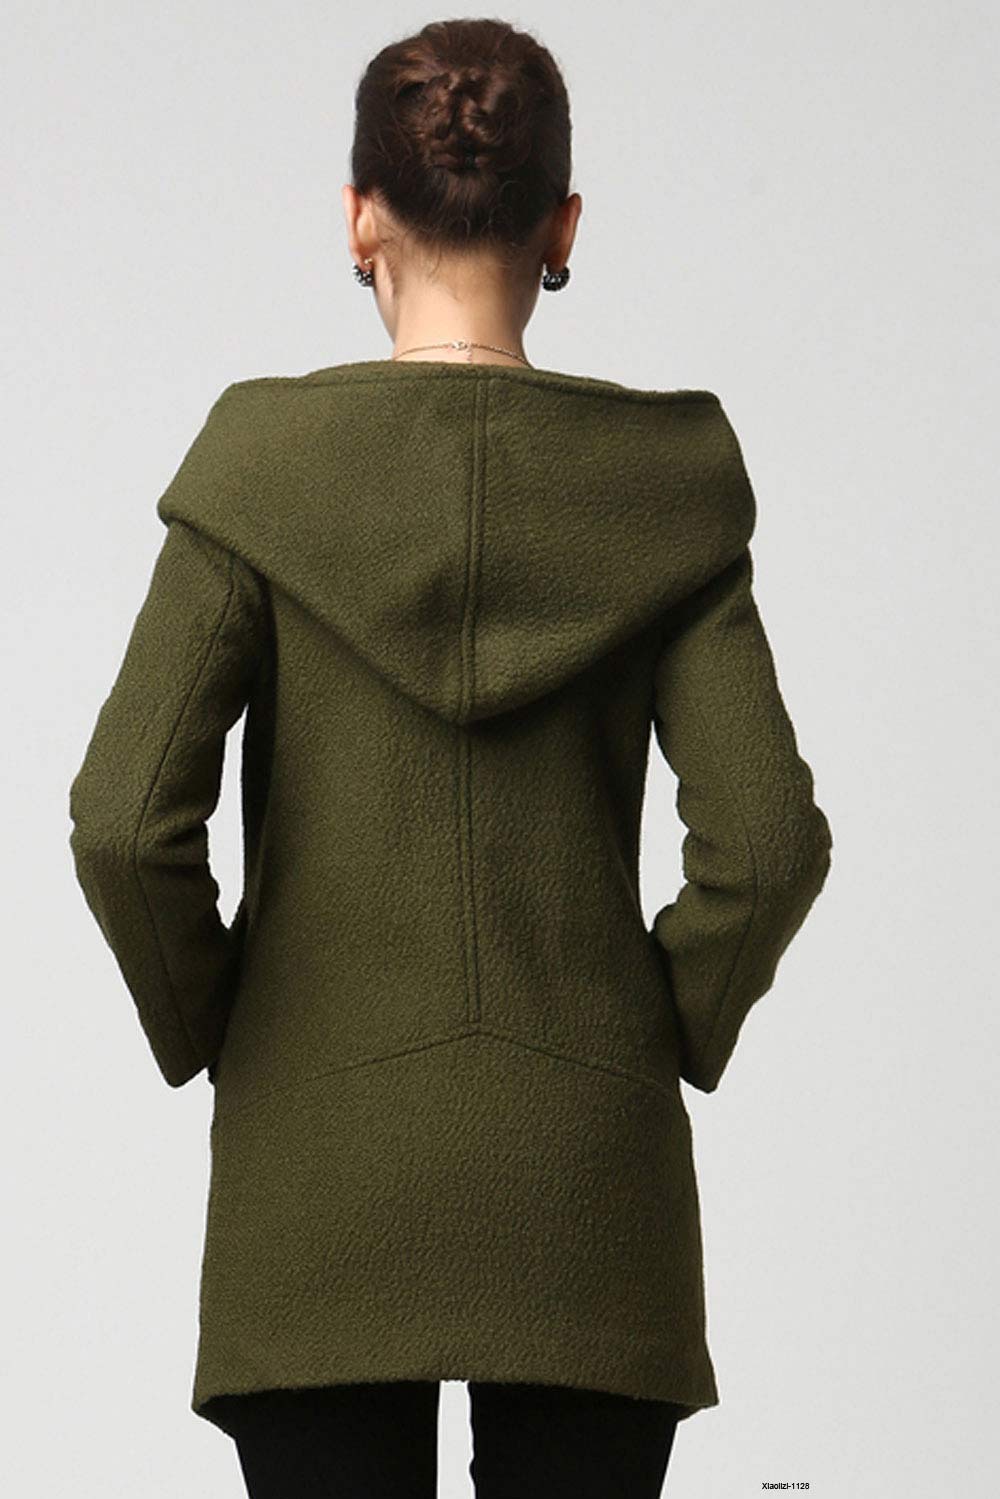 Womens Short Green Wool Coat with Oversized Hood 1128# – XiaoLizi